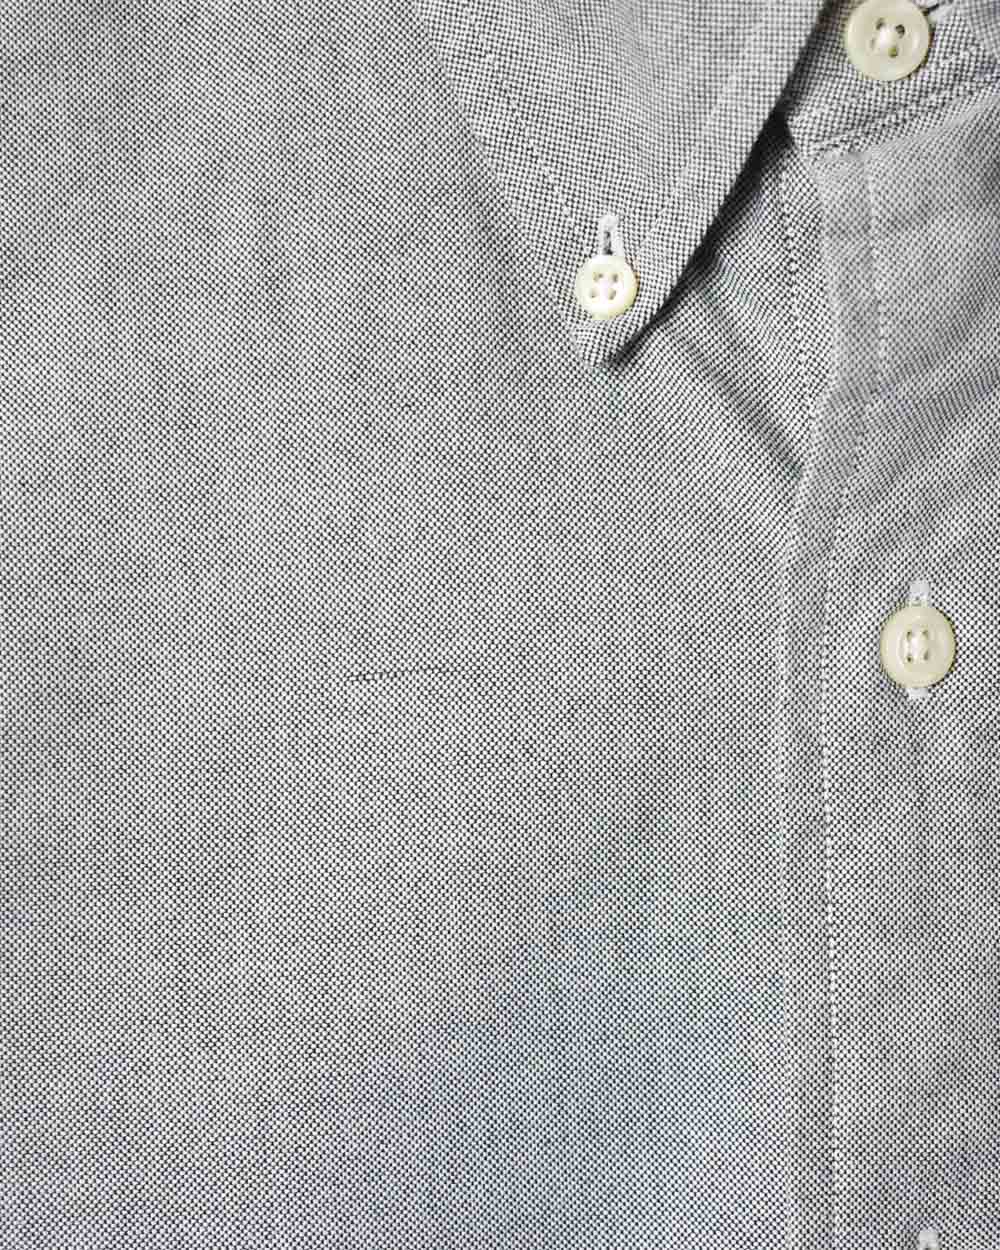 Grey Polo Ralph Lauren Shirt - Medium